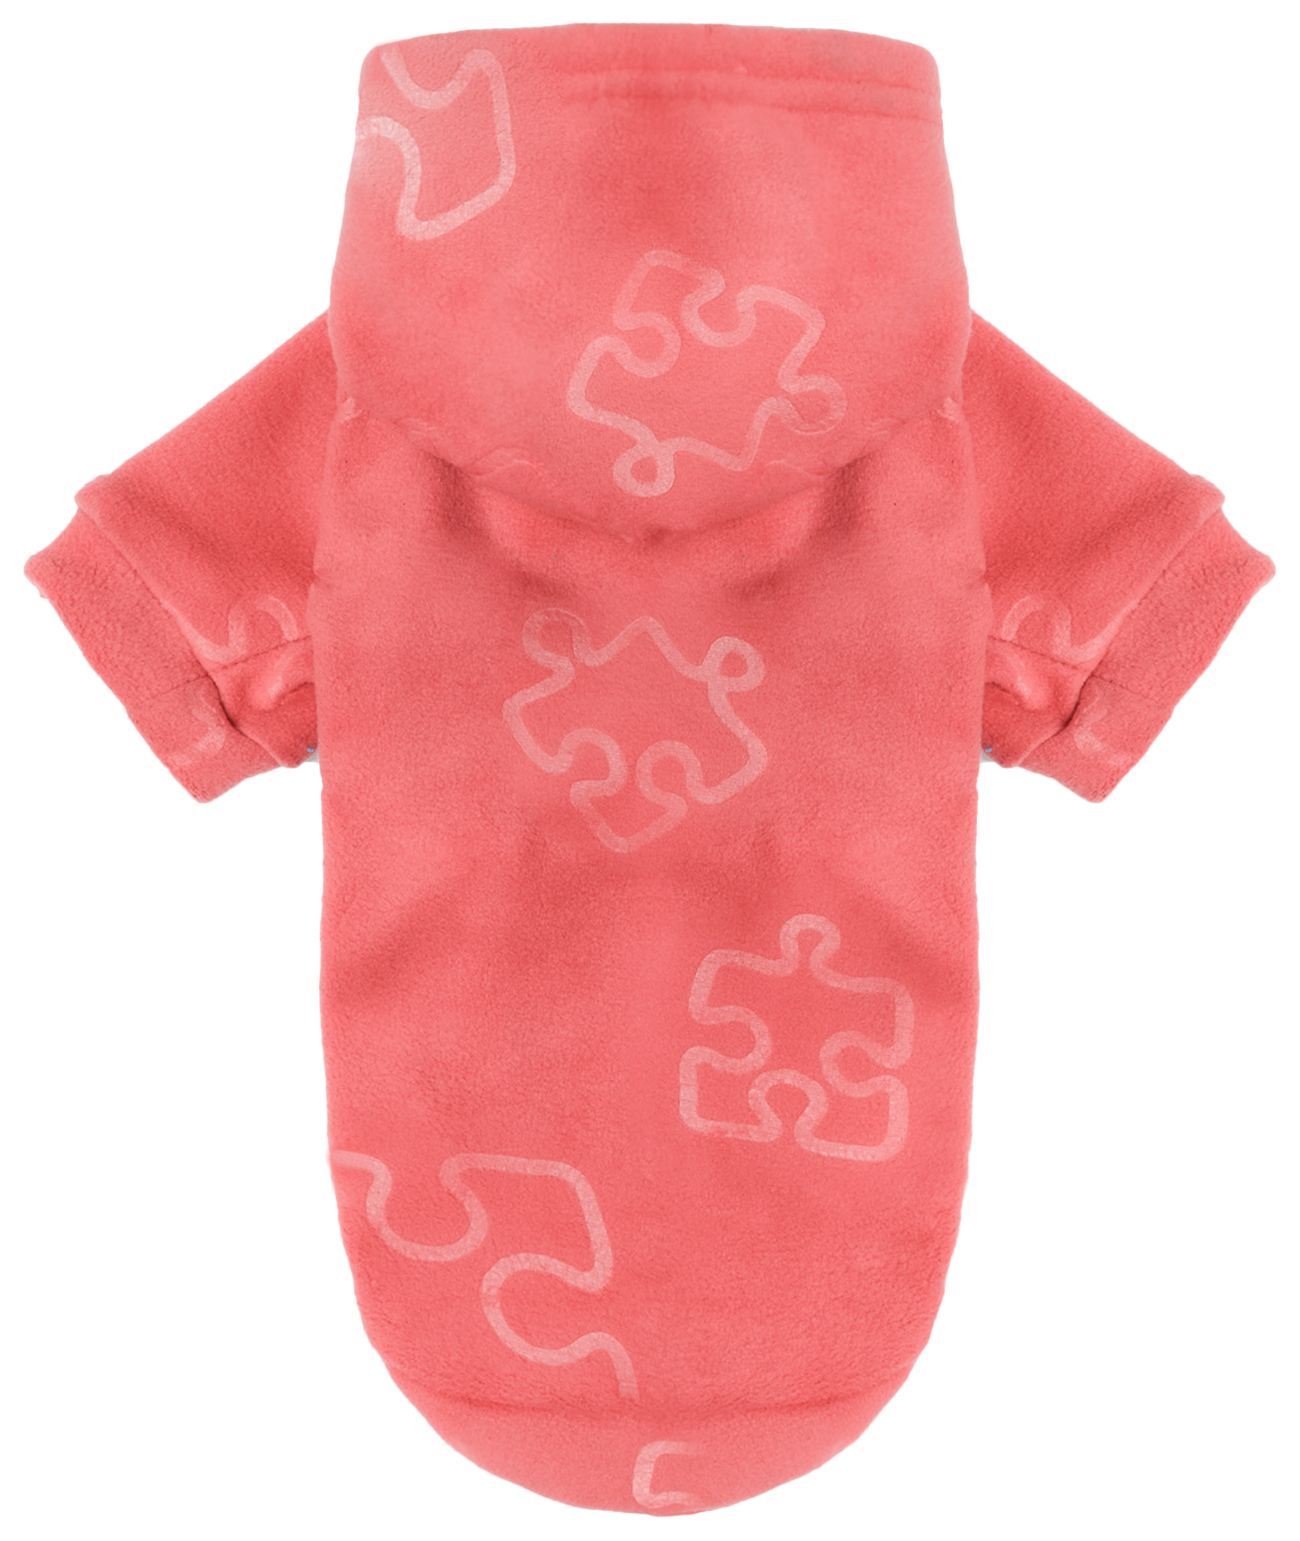 Толстовка для собак Yami-Yami одежда Пазлы, унисекс, розовый, XL, длина спины 34 см